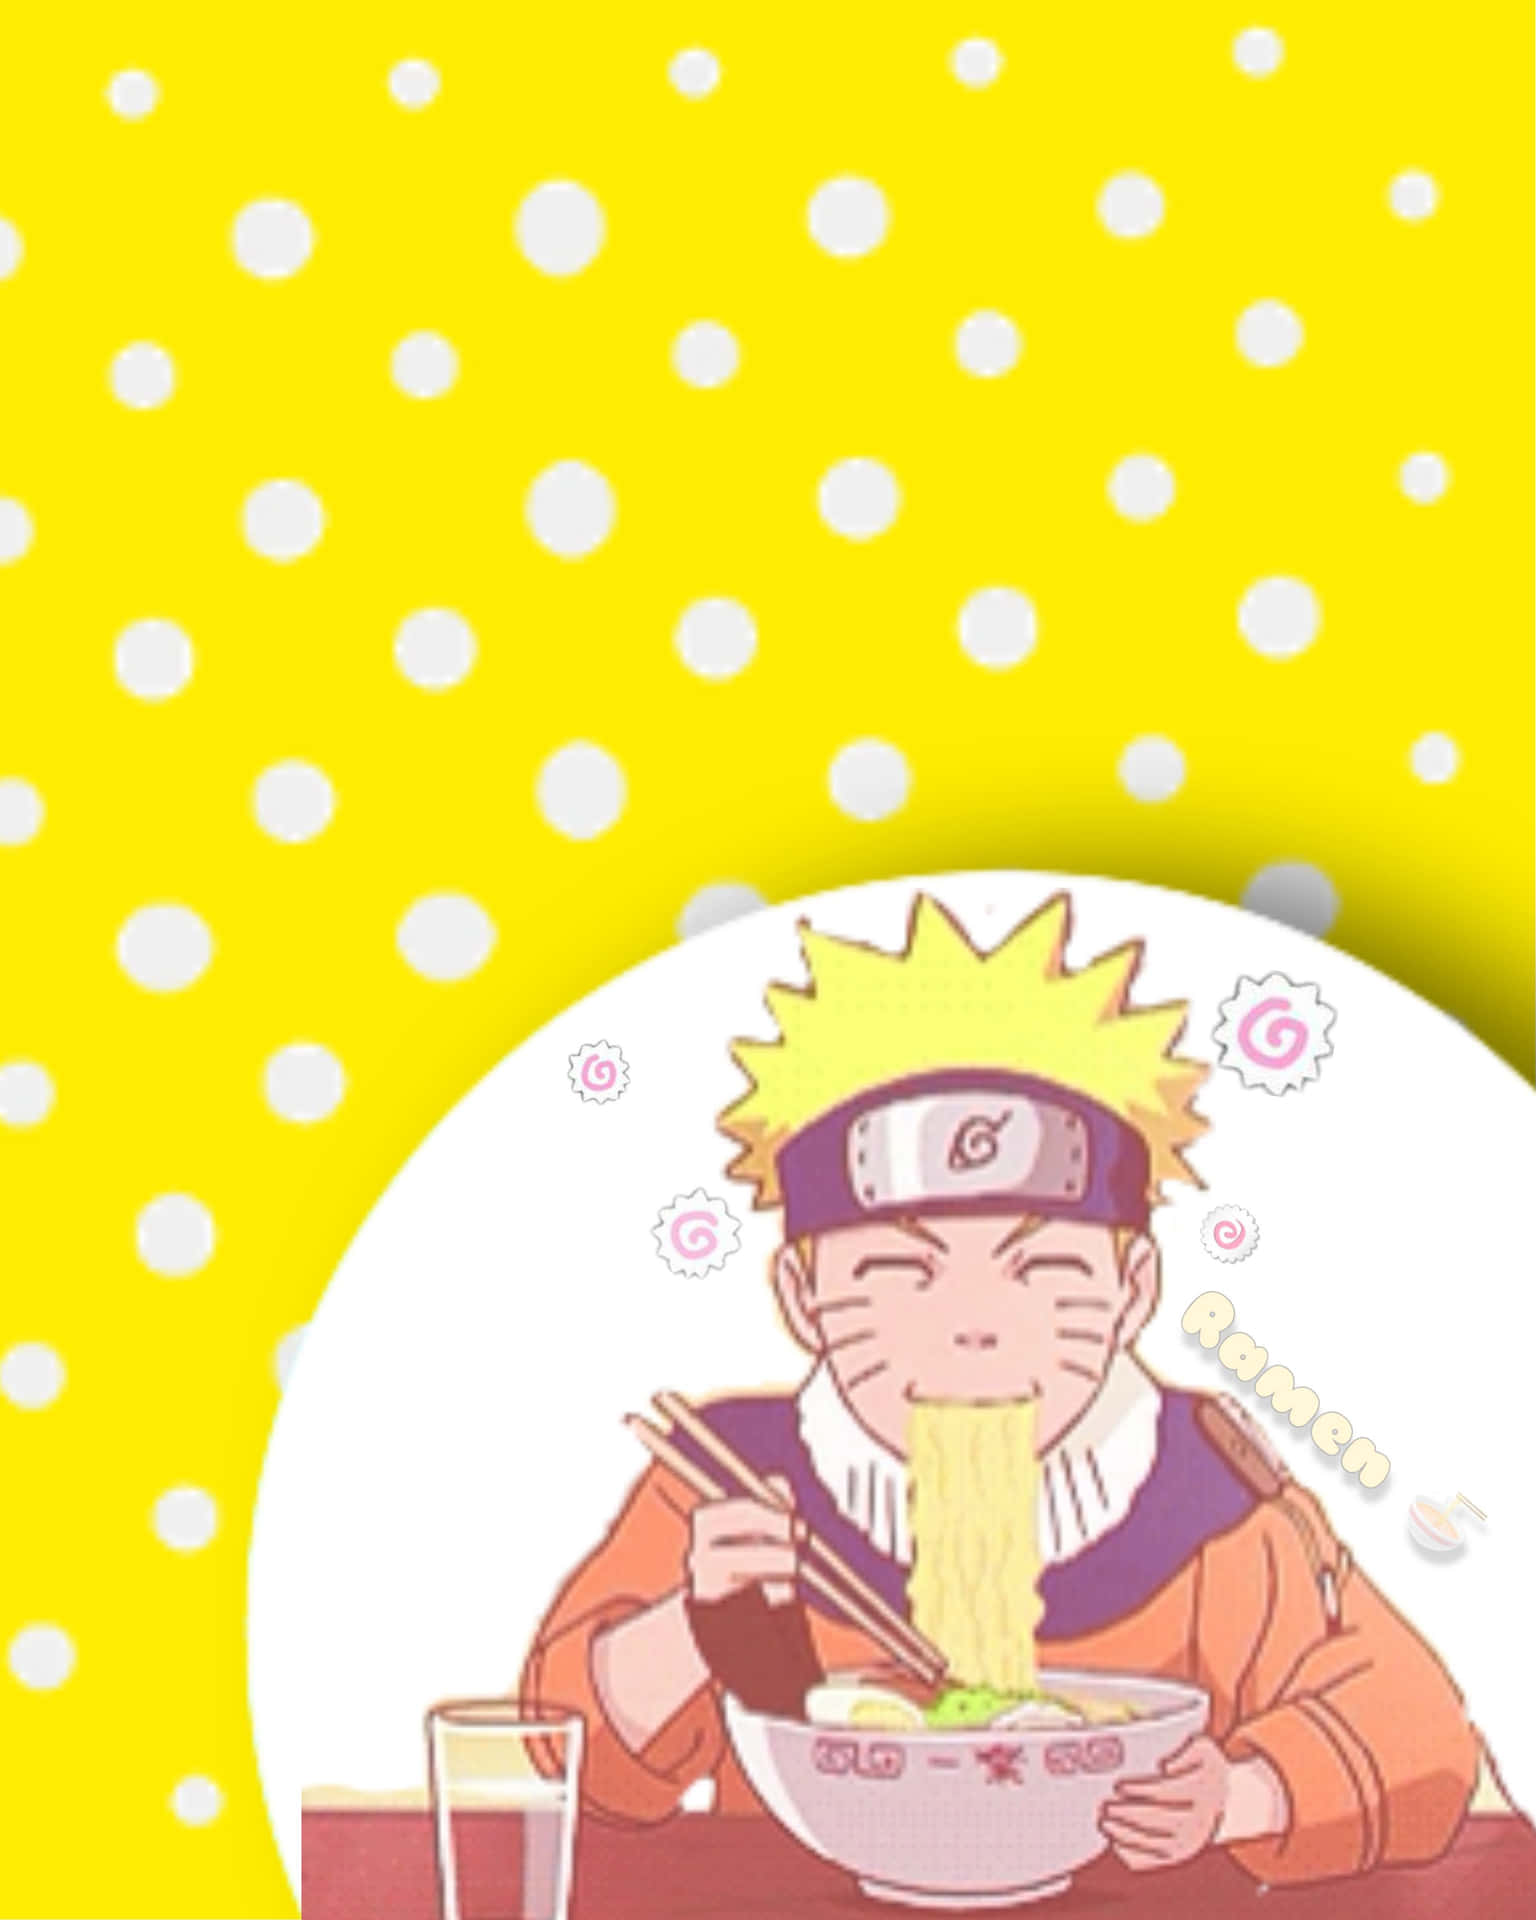 Nyd en forfriskende skål Naruto Ramen på en varm dag! Wallpaper